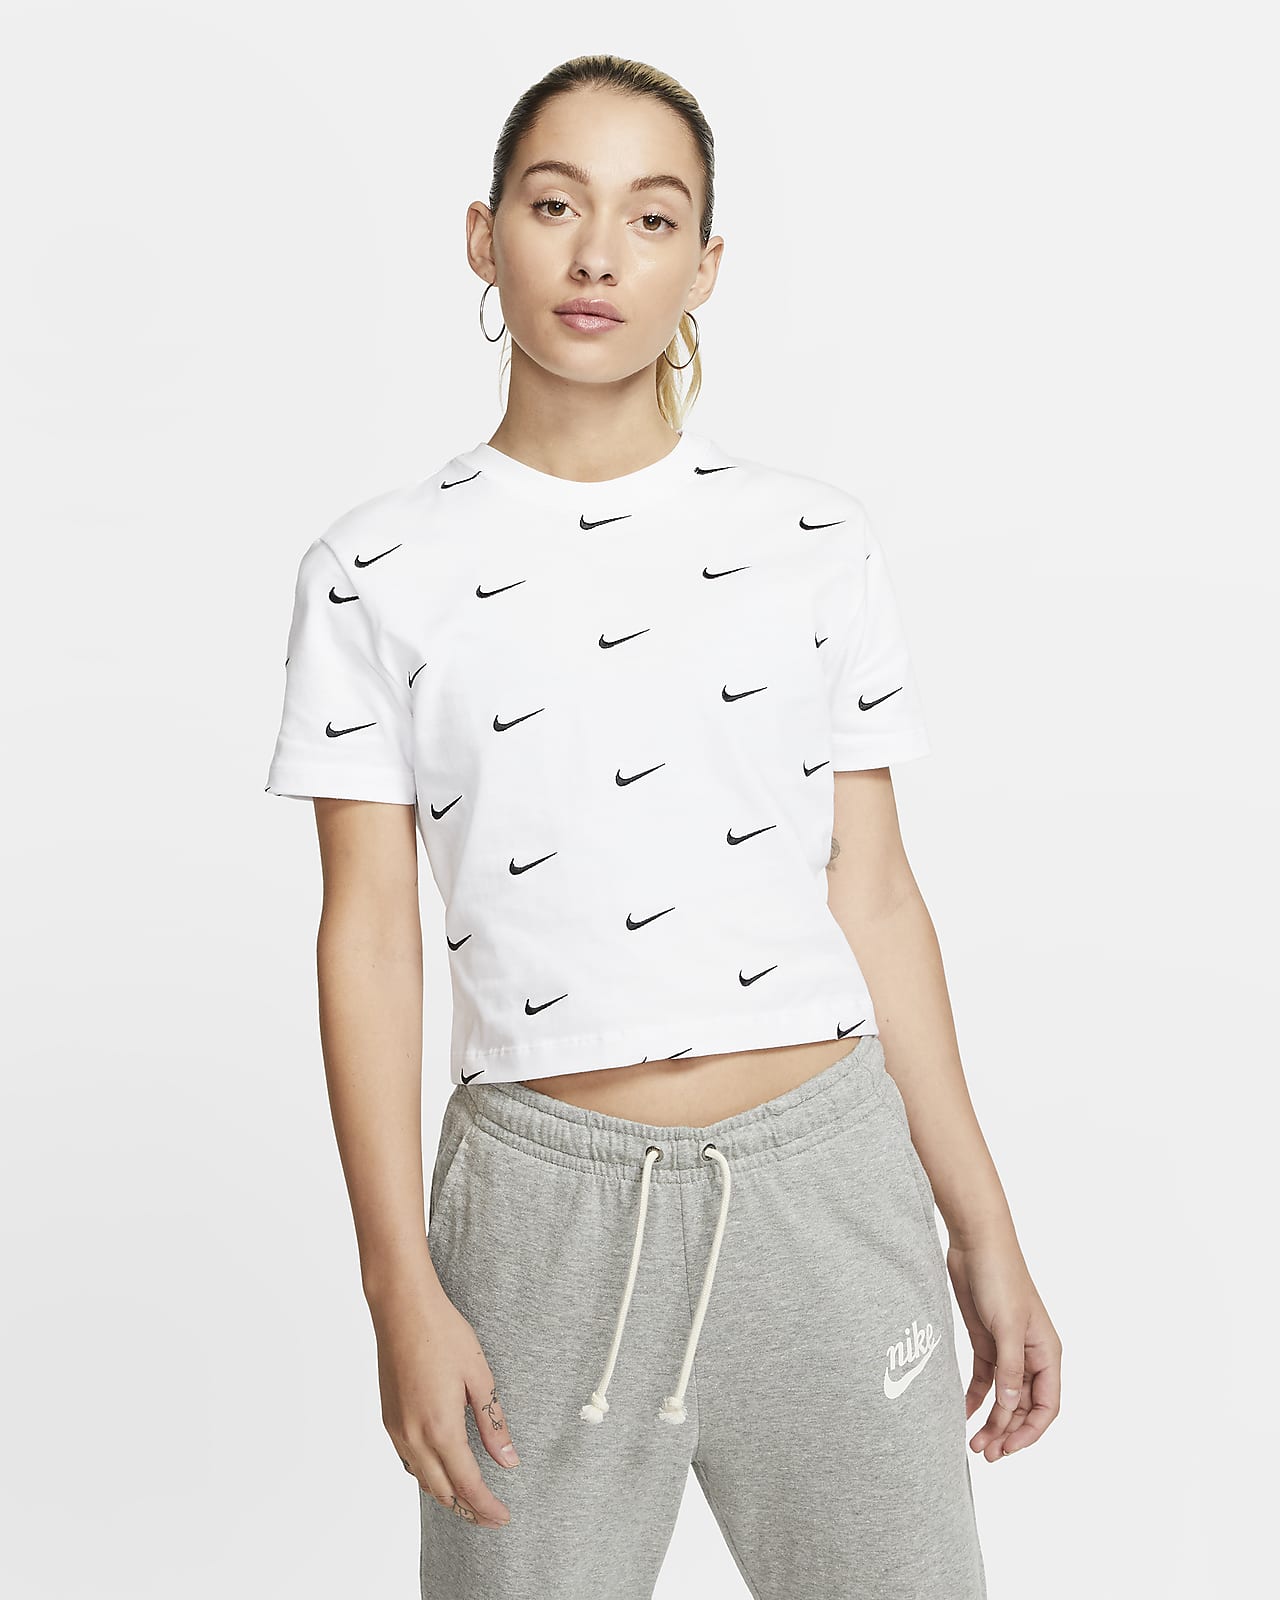 Nike Women's Swoosh Logo T-Shirt. Nike CA